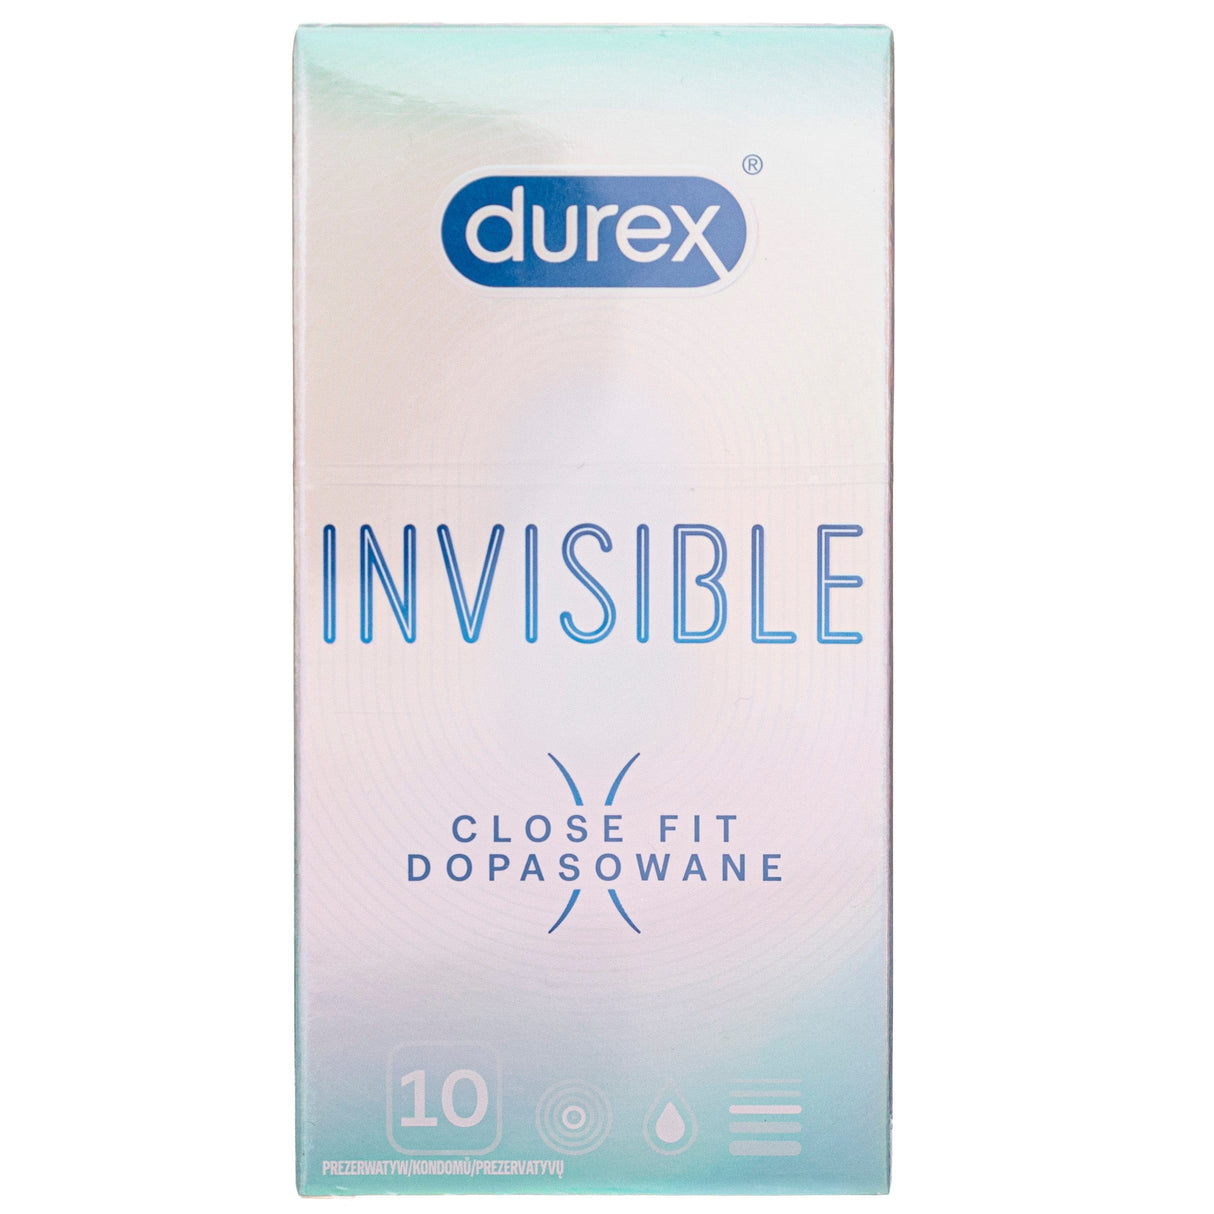 Durex Invisible Close Fit Condoms - 10 pieces